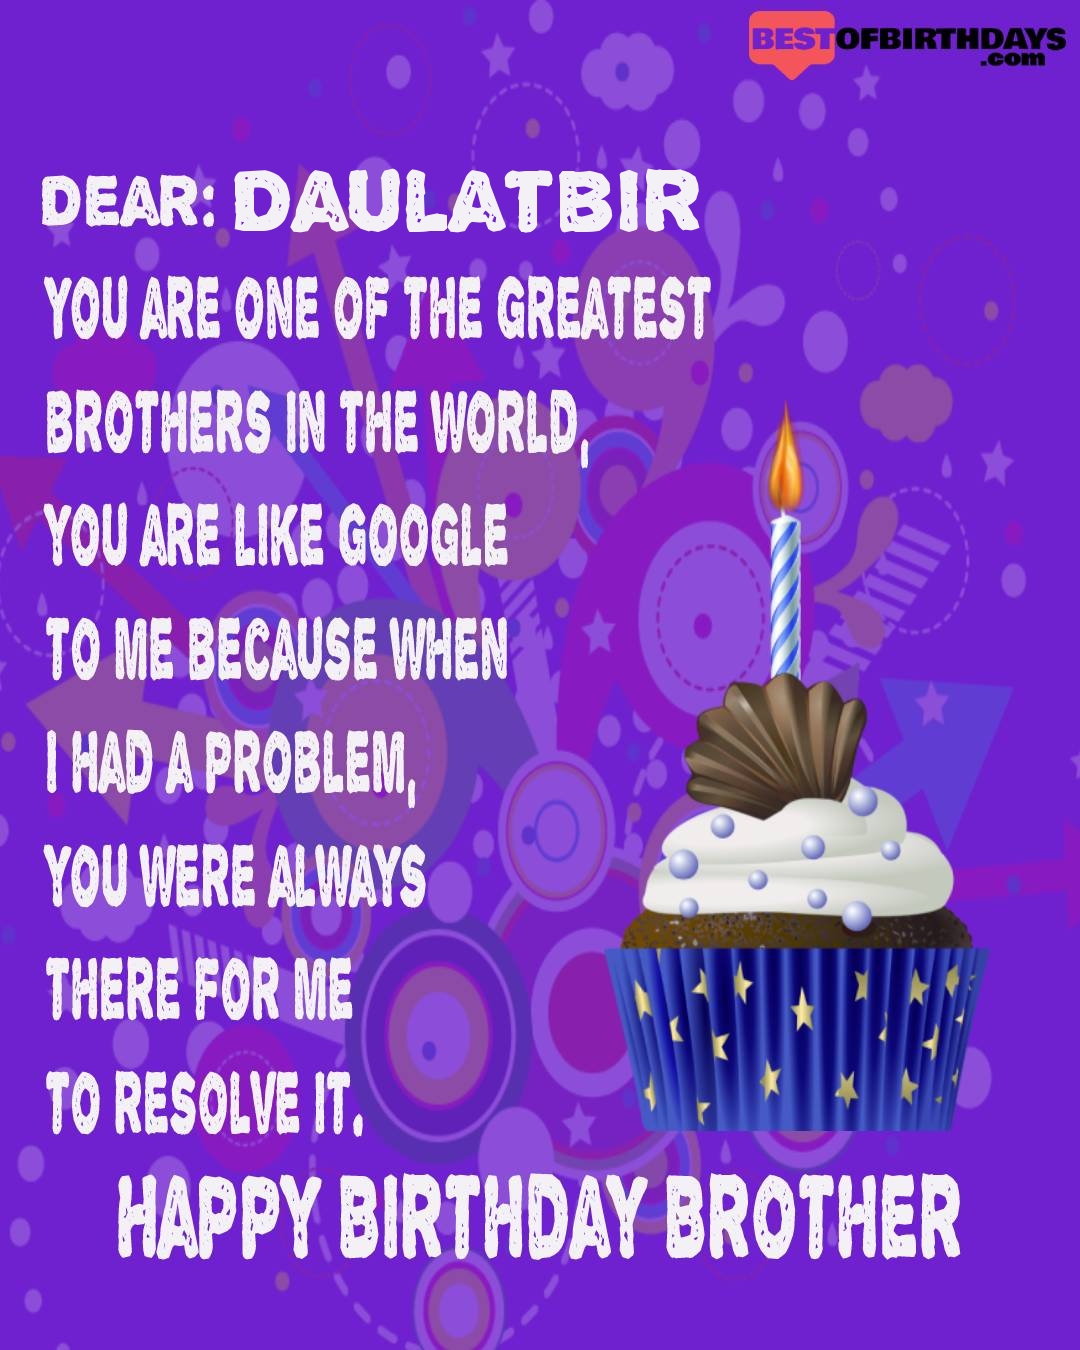 Happy birthday daulatbir bhai brother bro